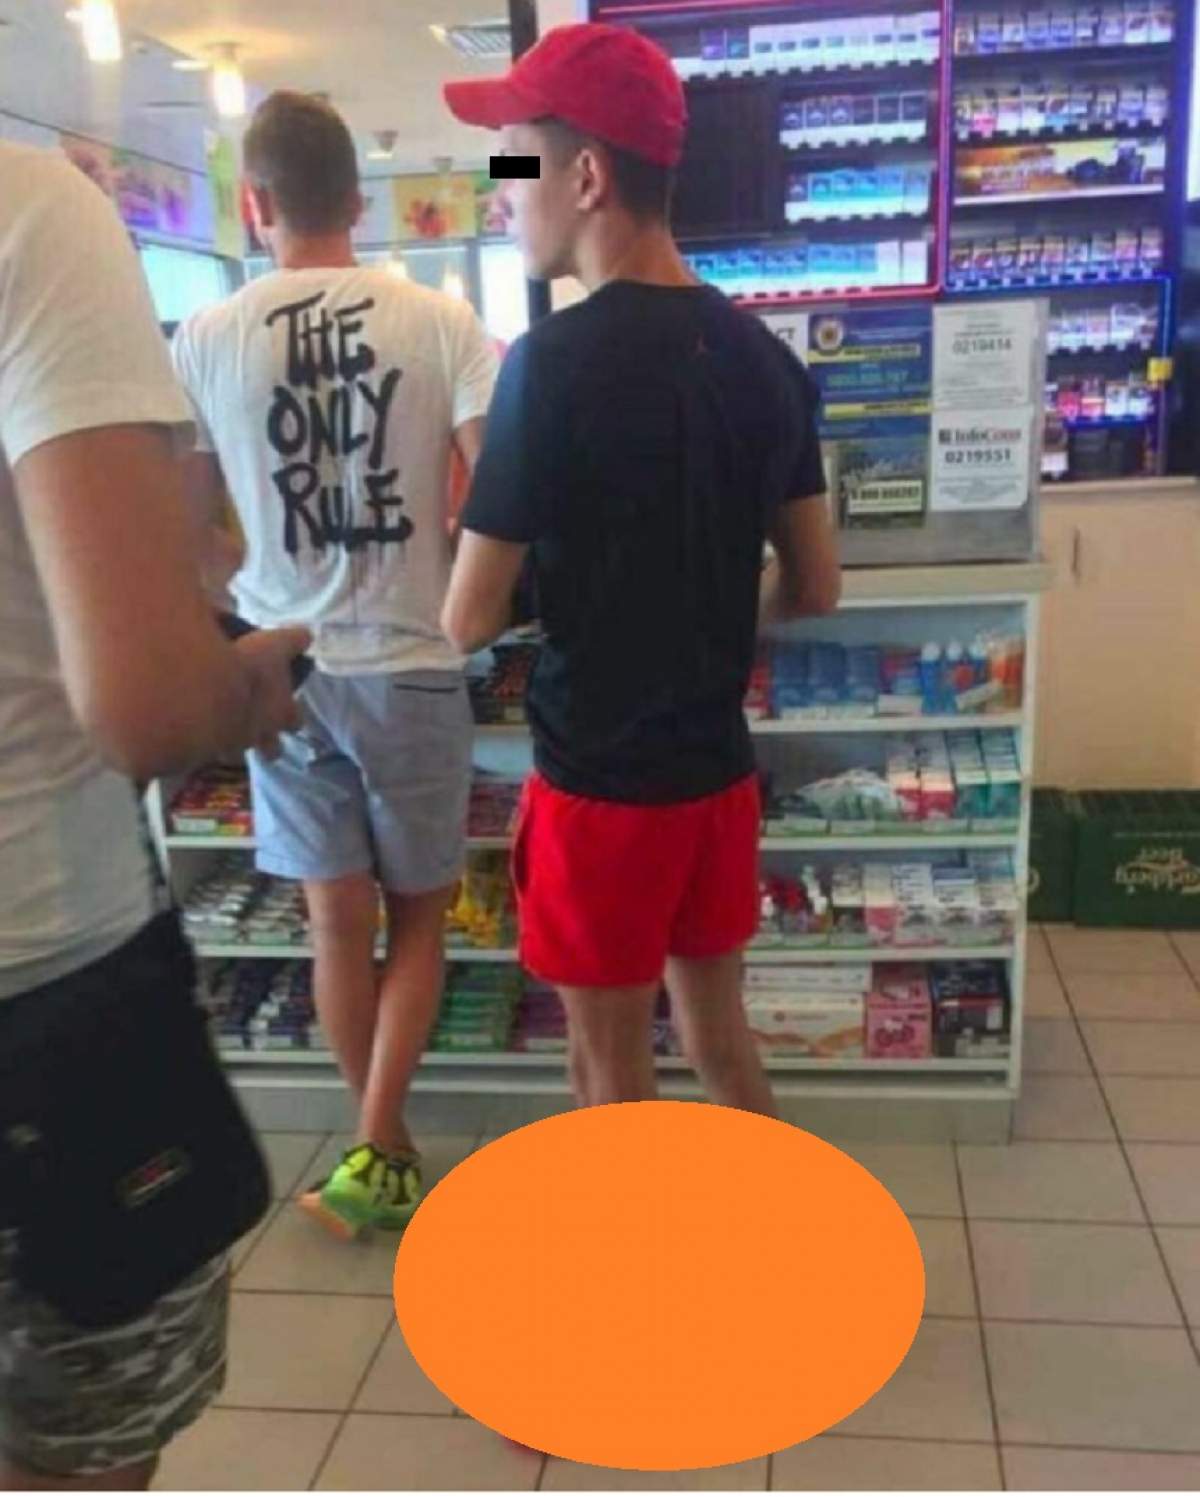 FOTO / Şoc în supermarket! Când au văzut cum este încălţat acest tânăr, toţi oamenii şi-au dat coate